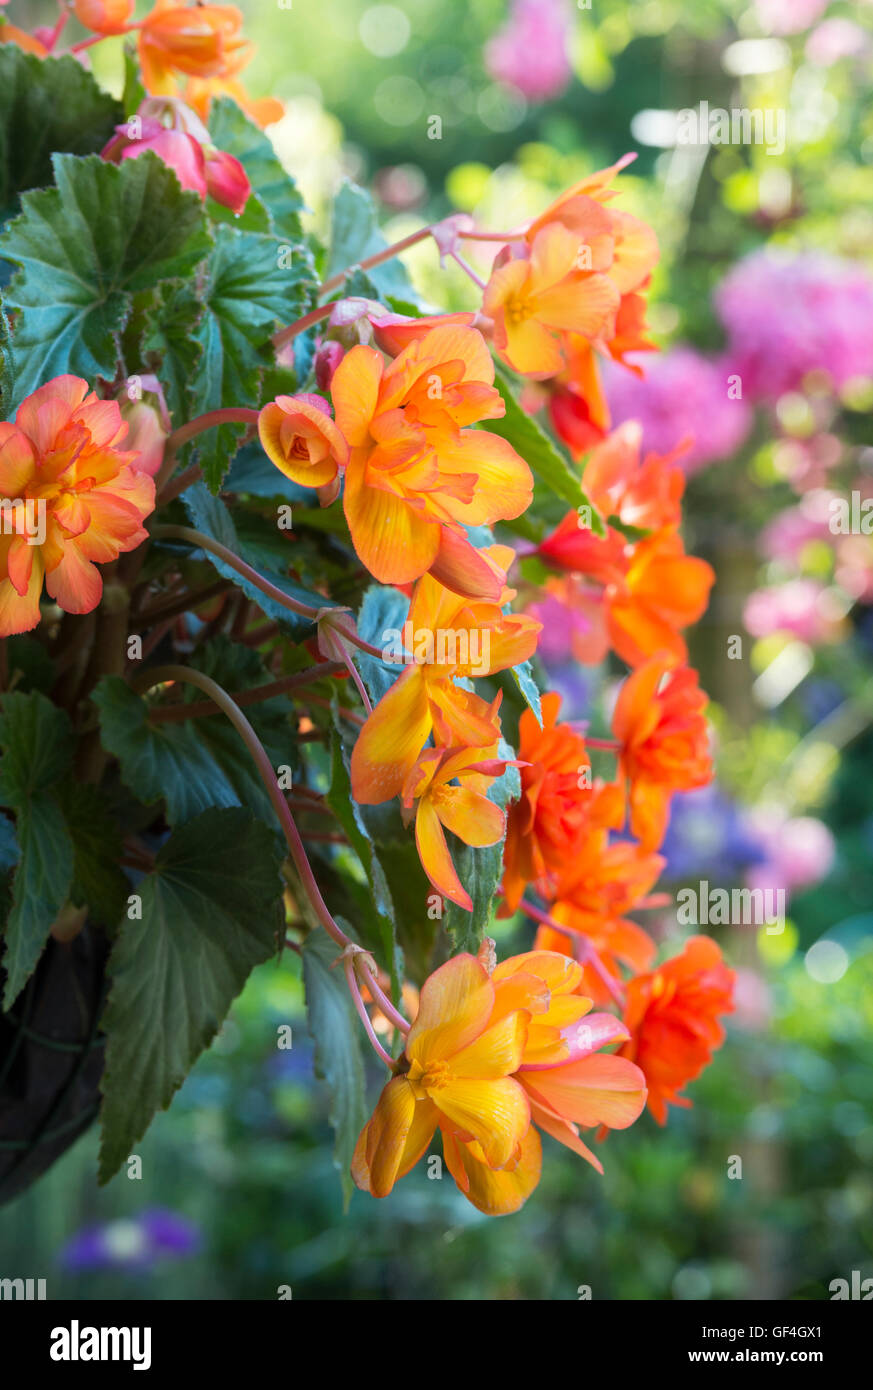 Begonia "Apricot funkeln" Blumen in einen hängenden Korb Stockfoto